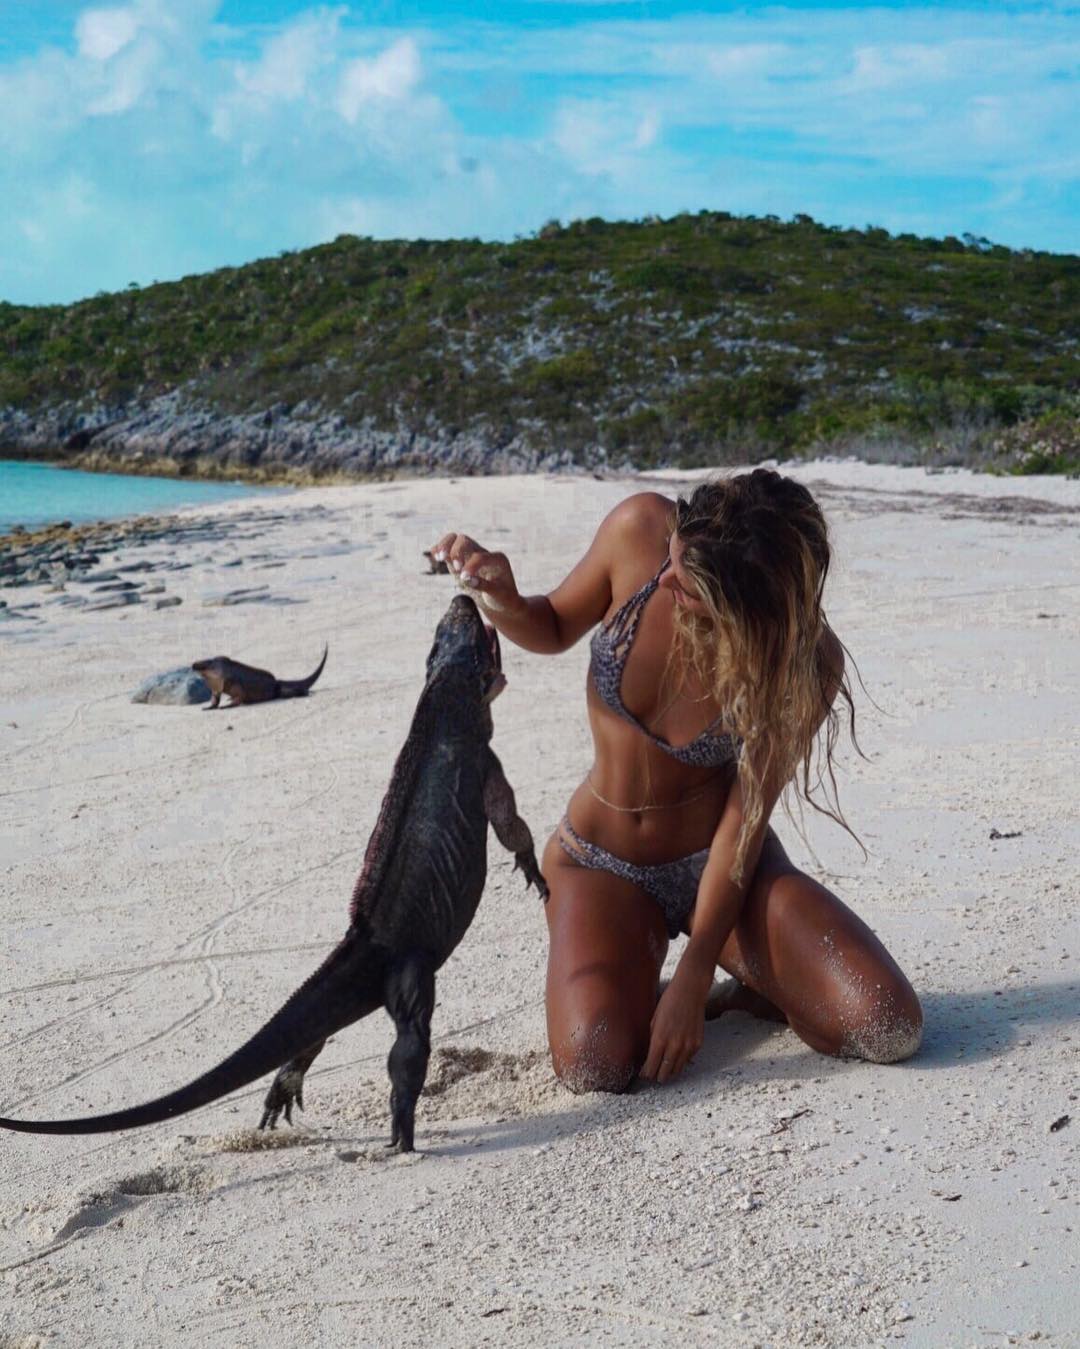 22-летняя студентка путешествует по экзотическим местам и делает снимки с удивительными животными